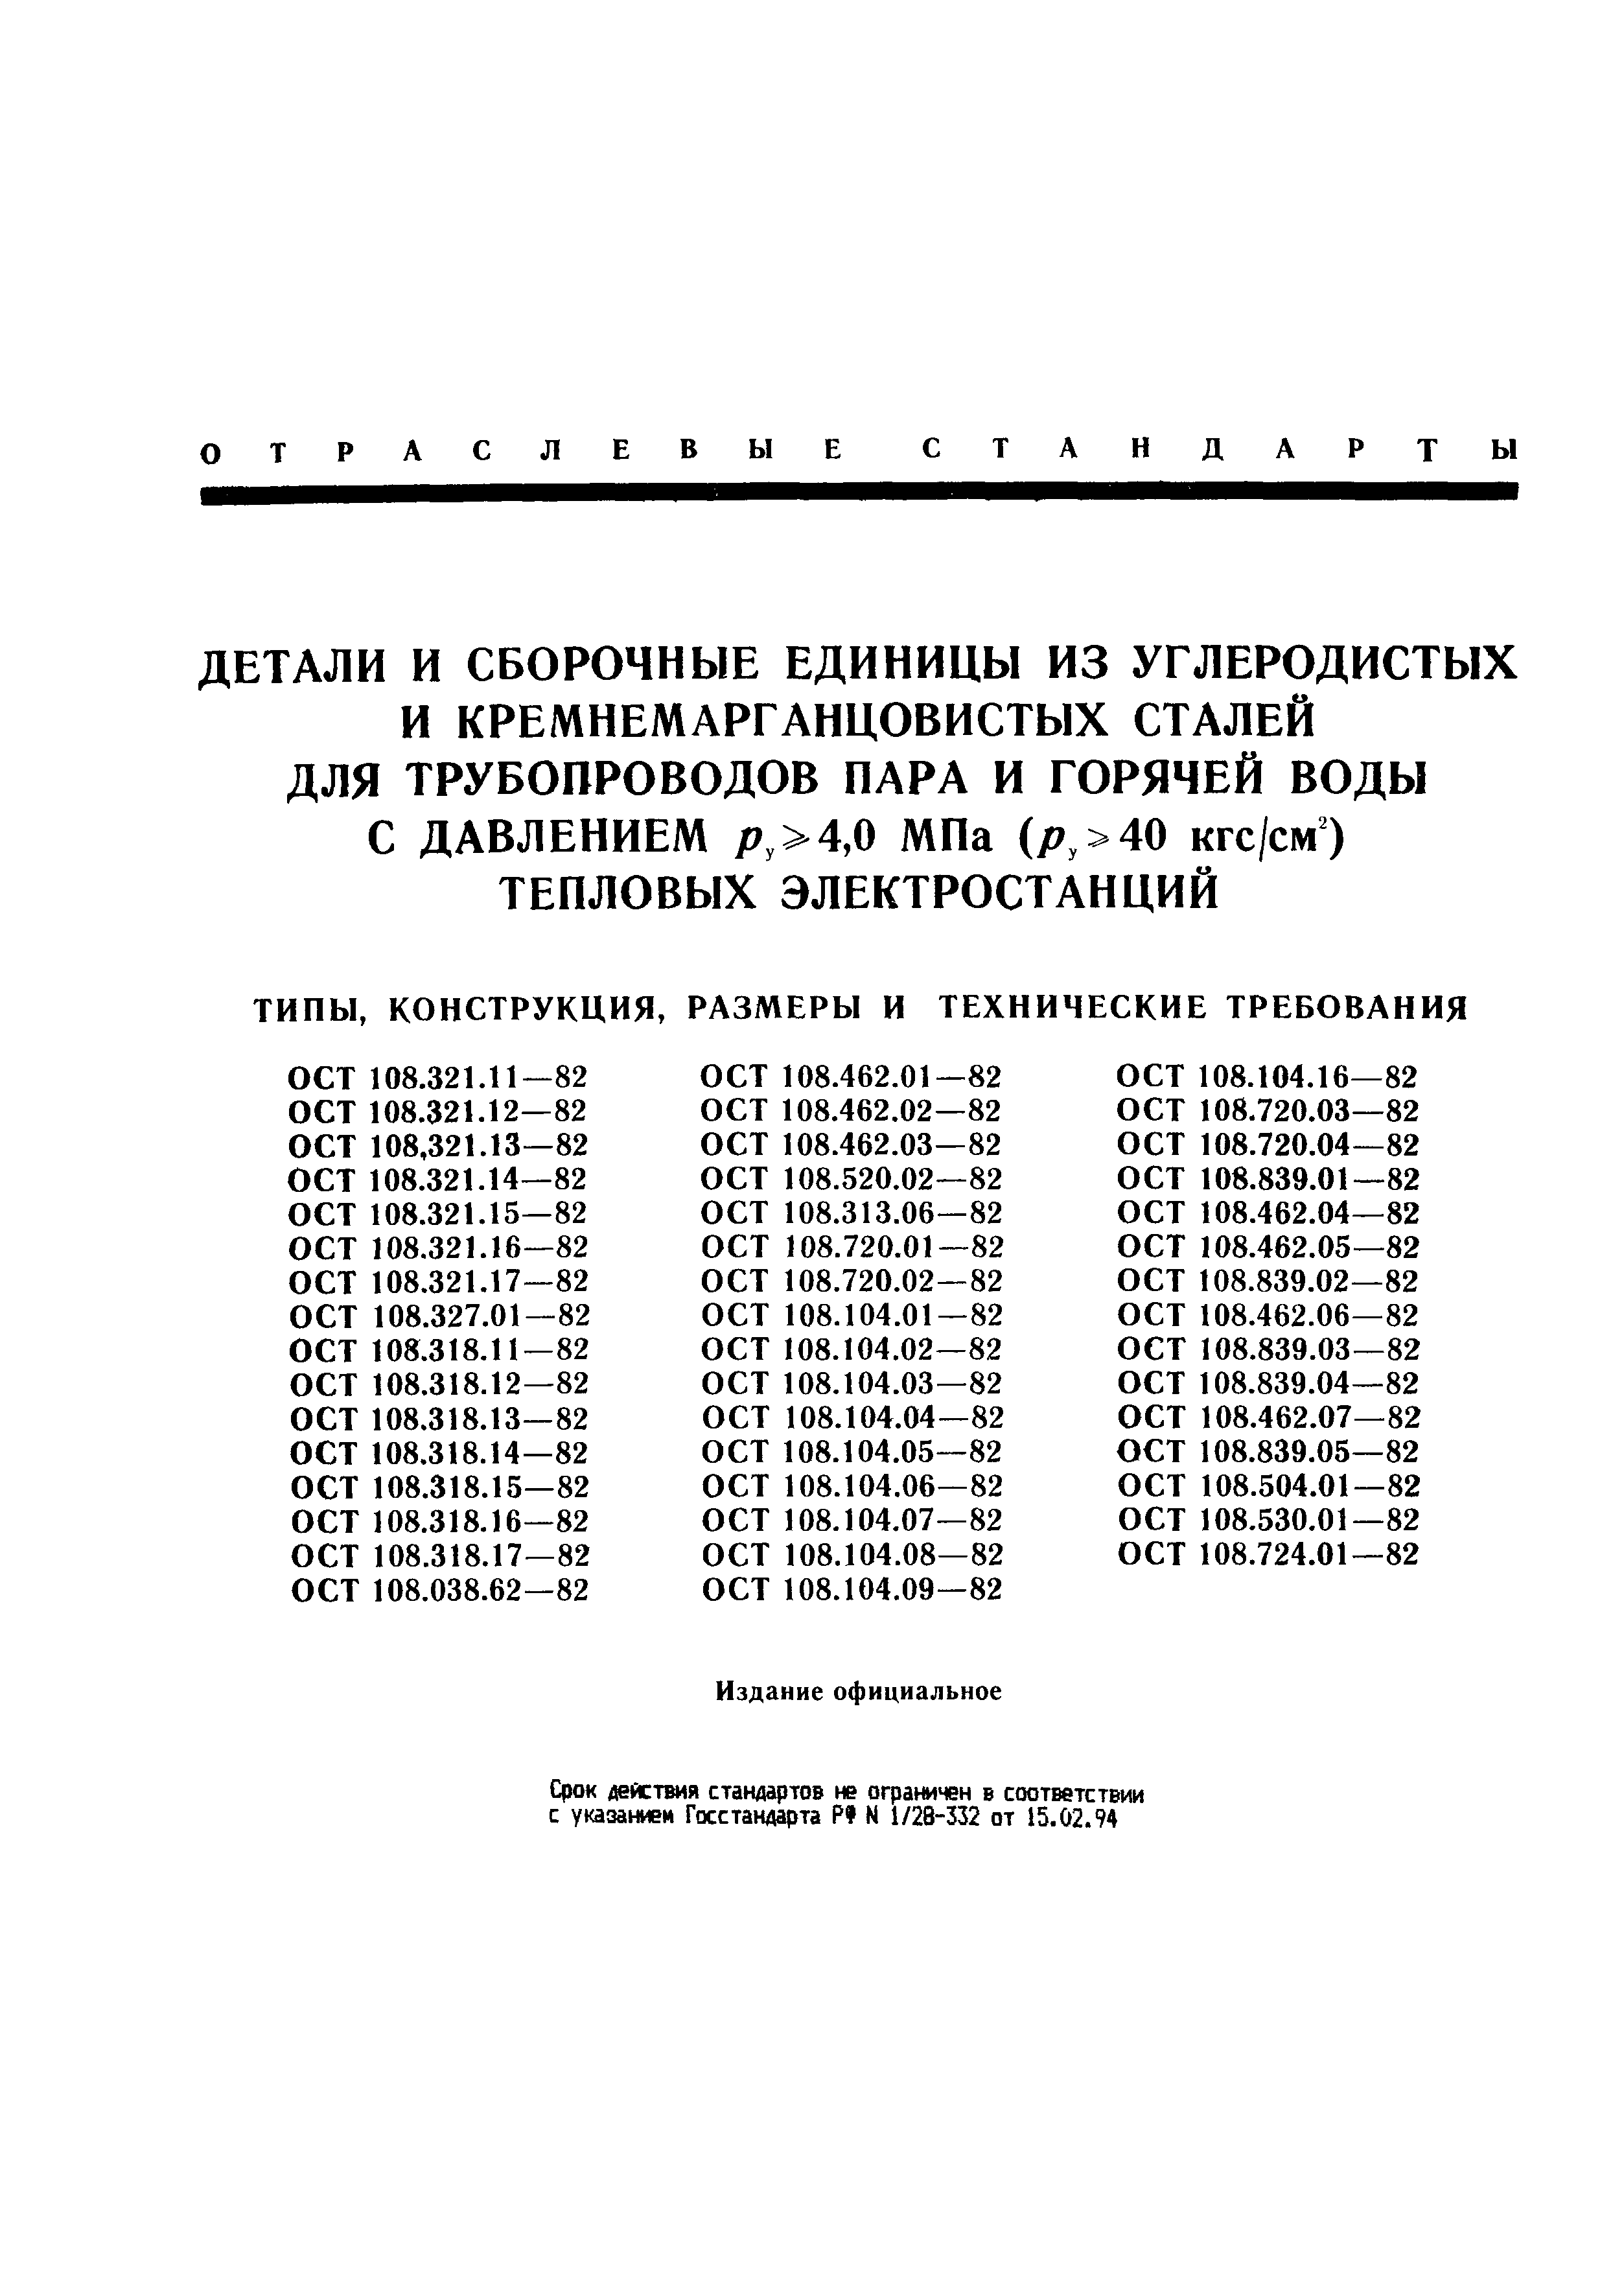 ОСТ 108.318.13-82